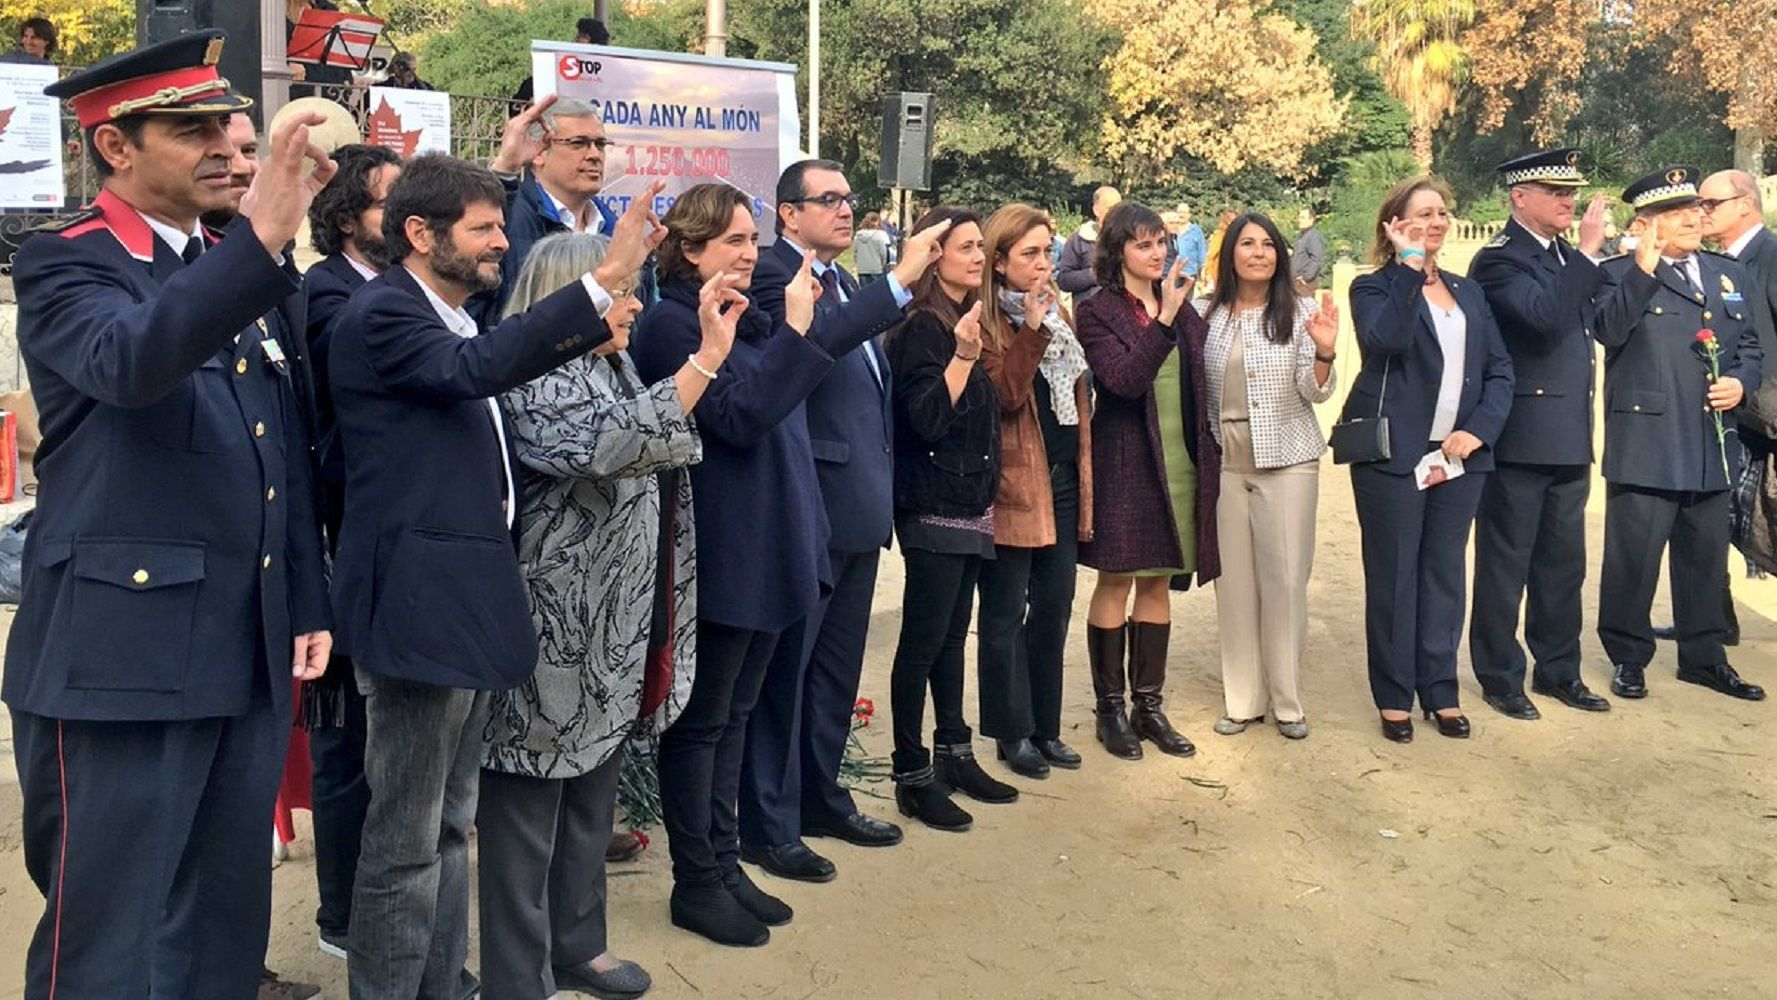 Ada Colau y Jordi Jané piden esforzarse por reducir a "cero" las muertes en la carretera